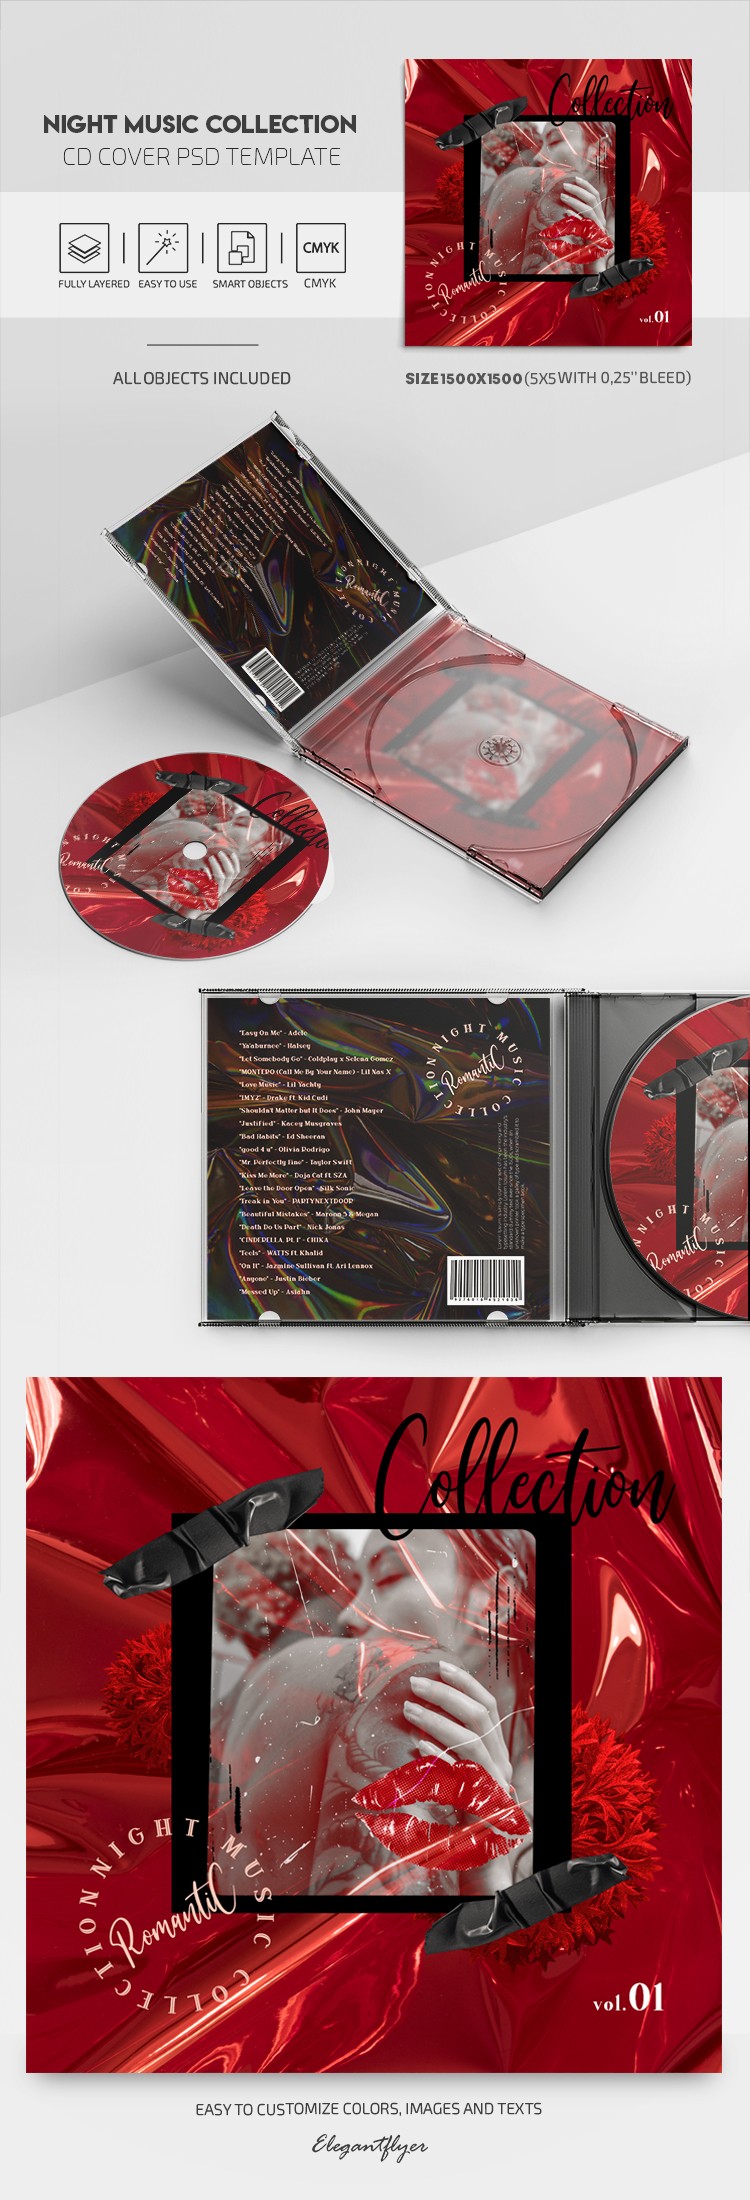 Collection de Musique de Nuit - Couverture CD by ElegantFlyer